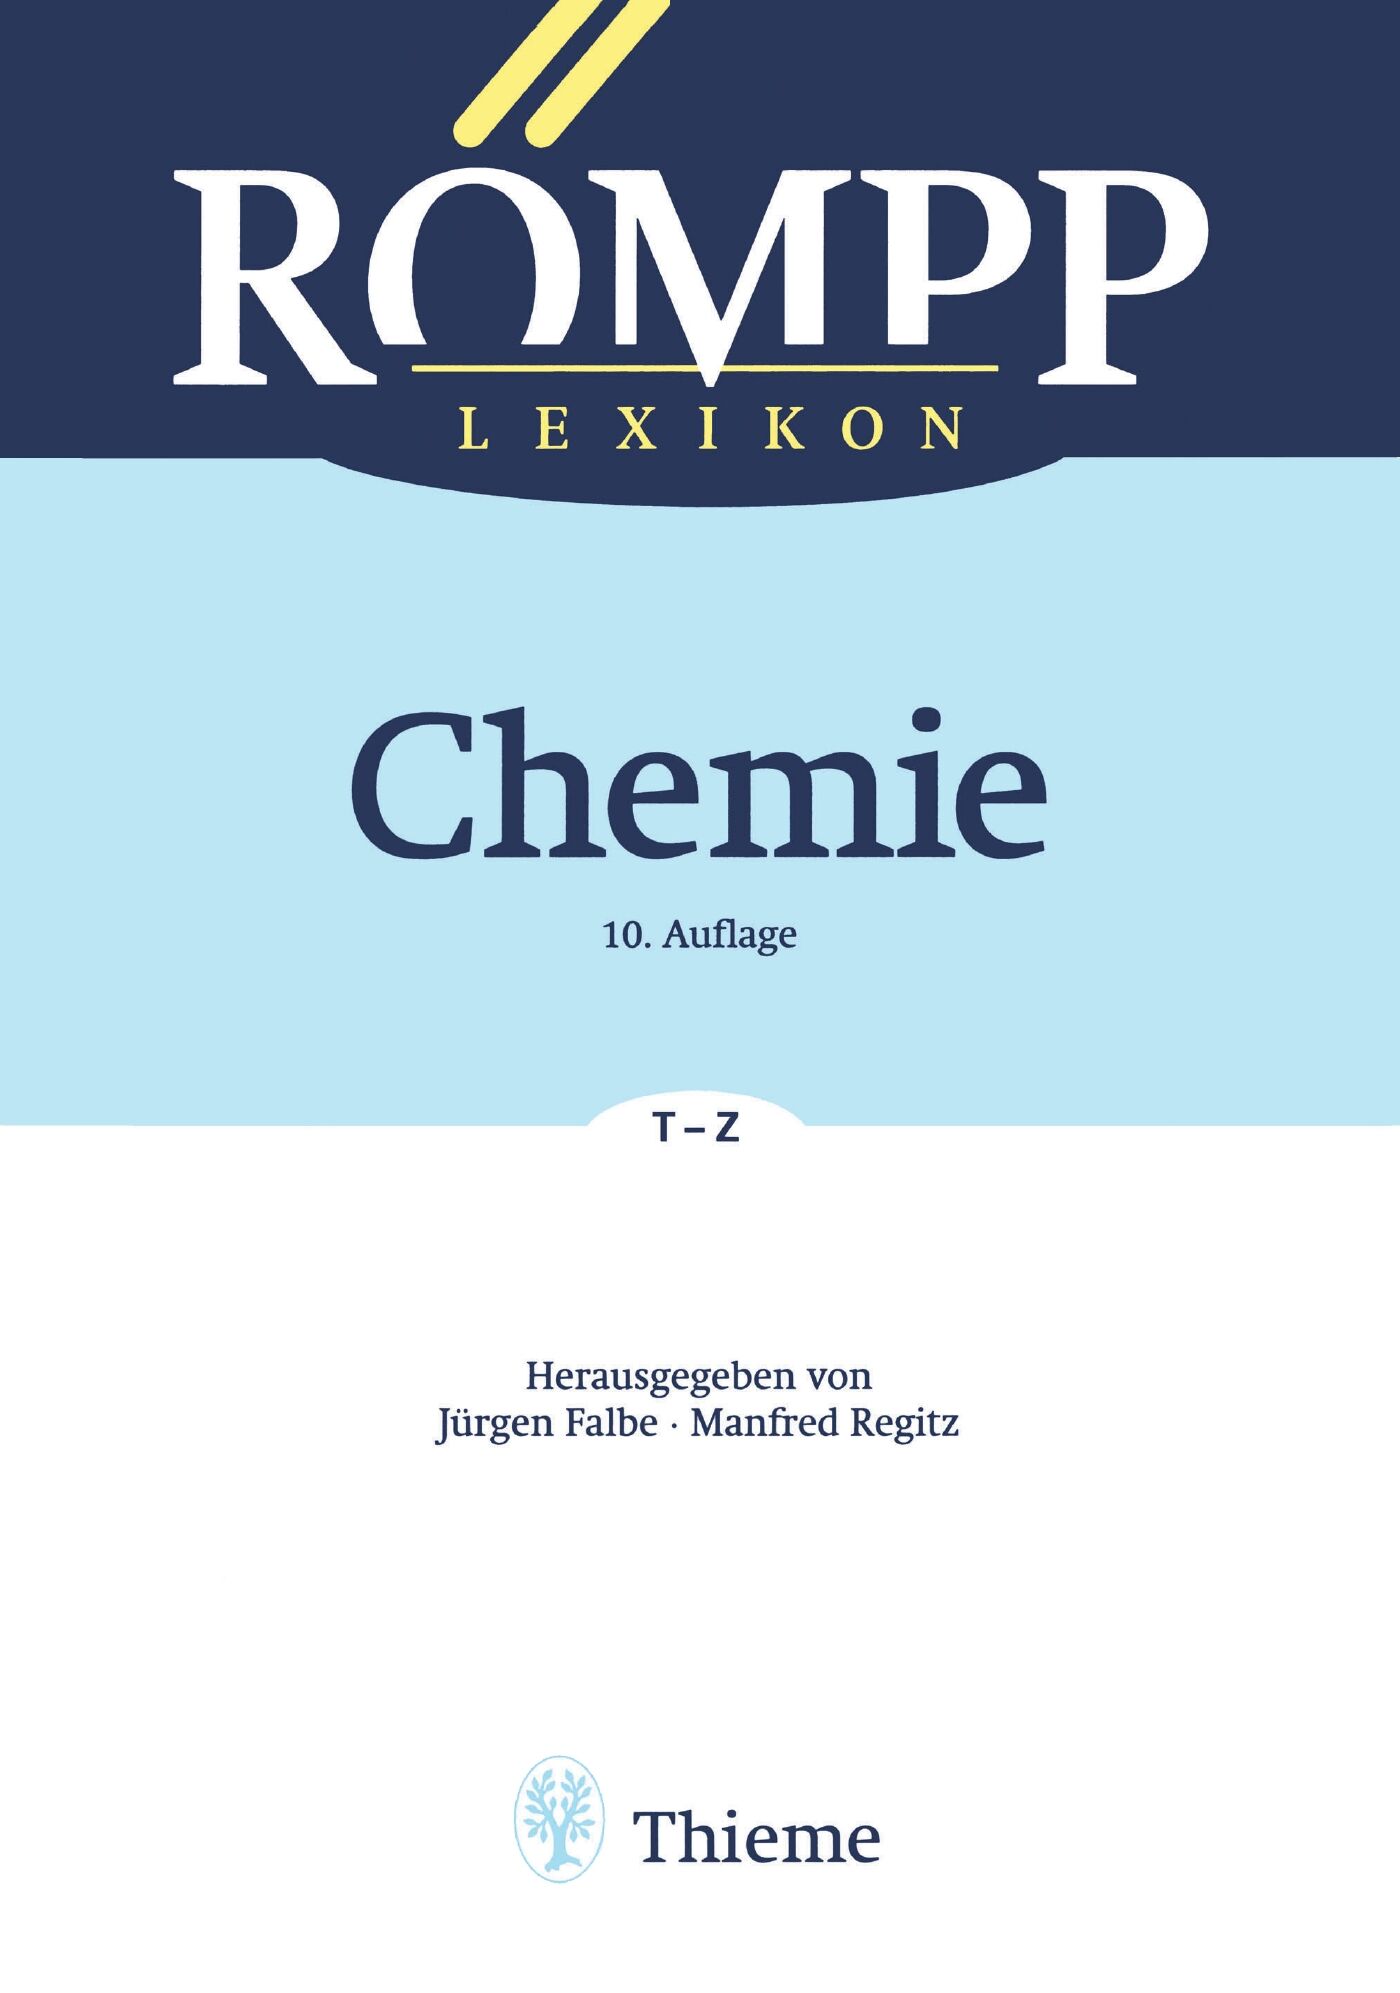 RÖMPP Lexikon Chemie, 10. Auflage, 1996-1999, 9783132000612